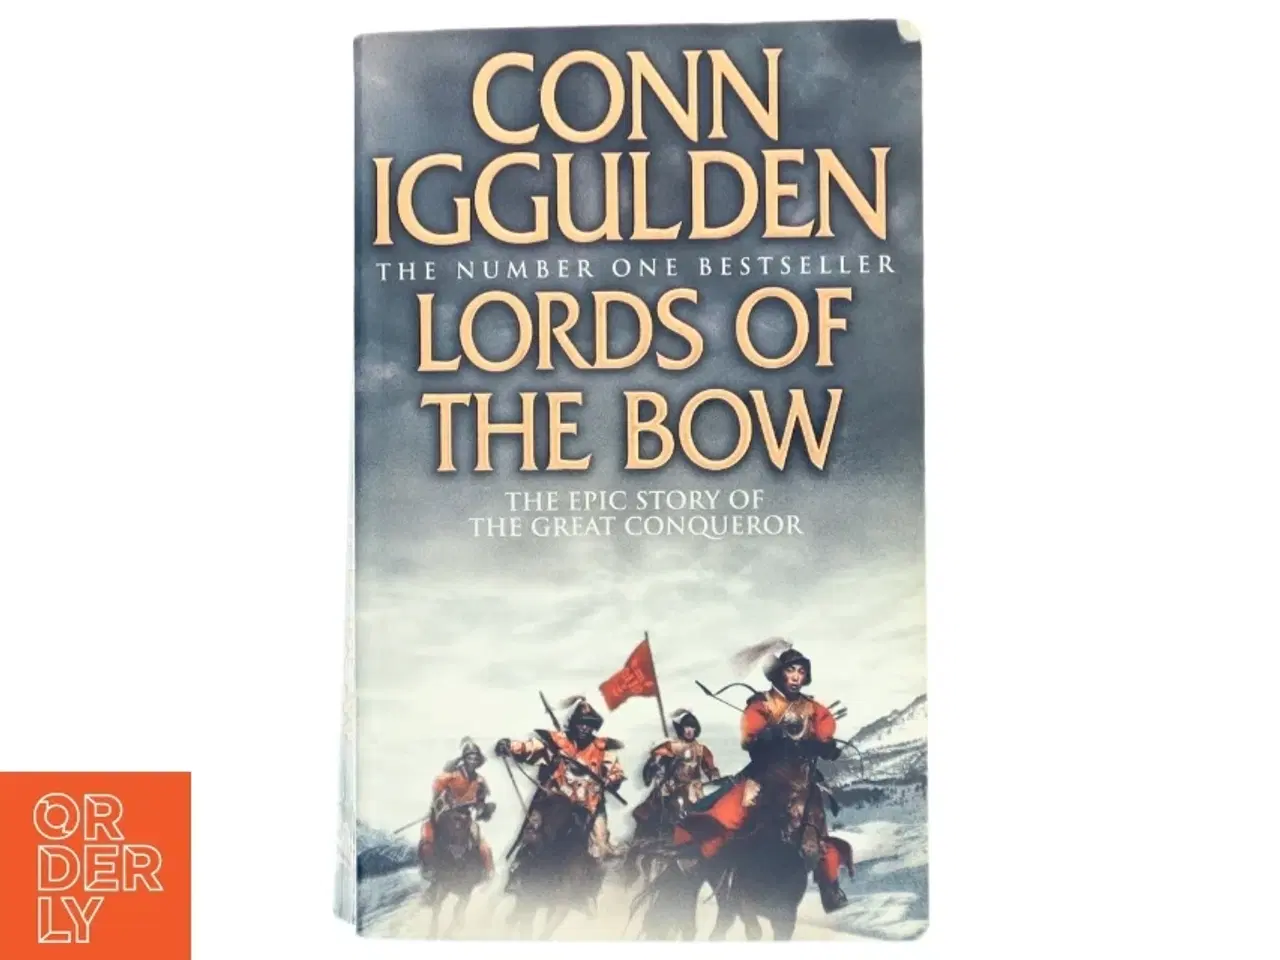 Billede 1 - 'Lords of the bow' af Conn Iggulden (bog)